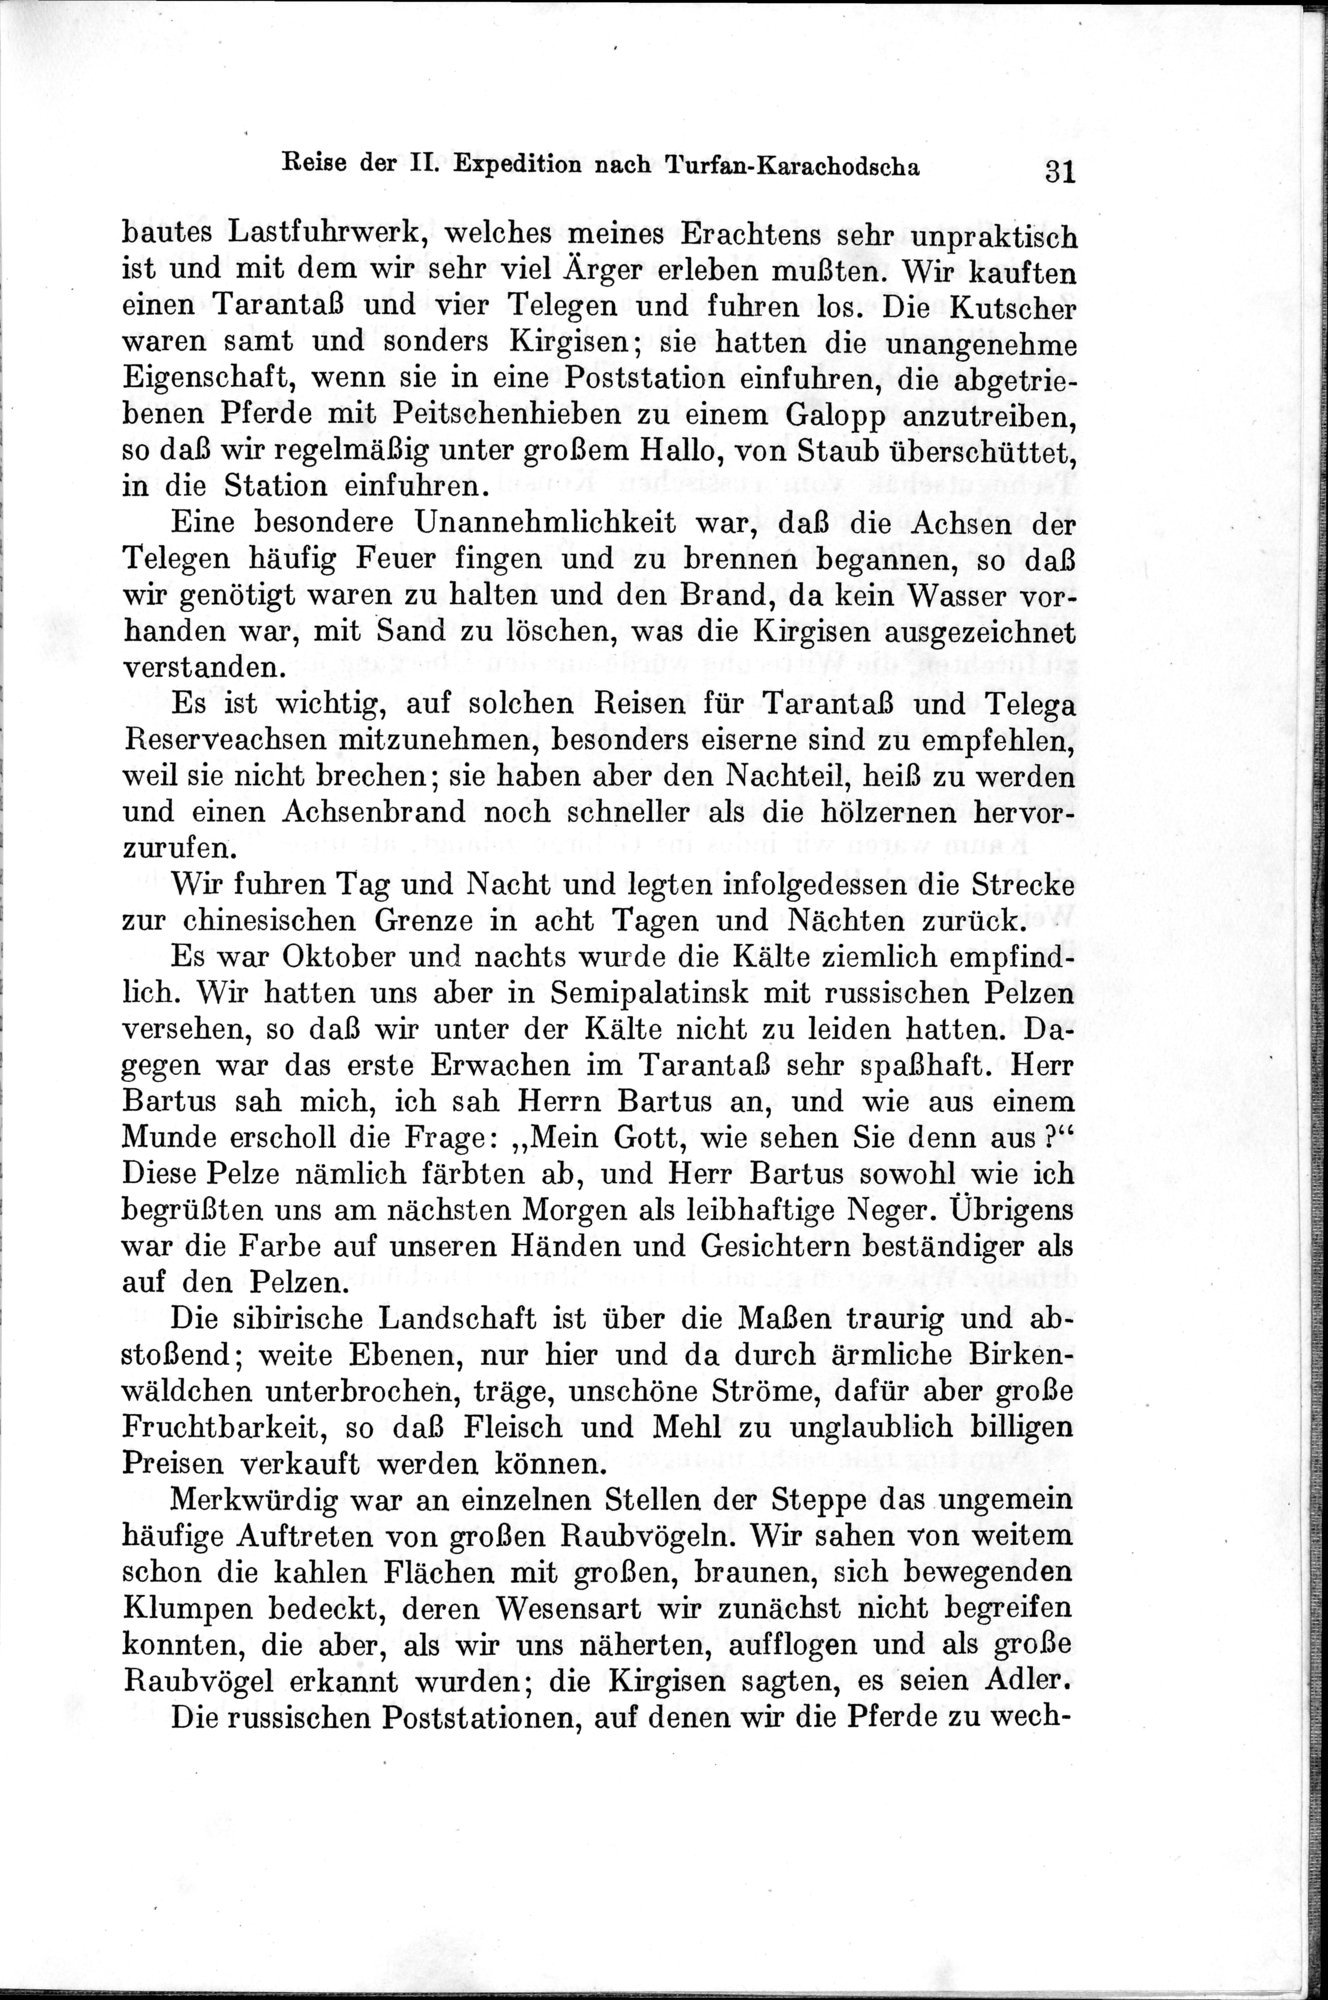 Auf Hellas Spuren in Ostturkistan : vol.1 / Page 51 (Grayscale High Resolution Image)